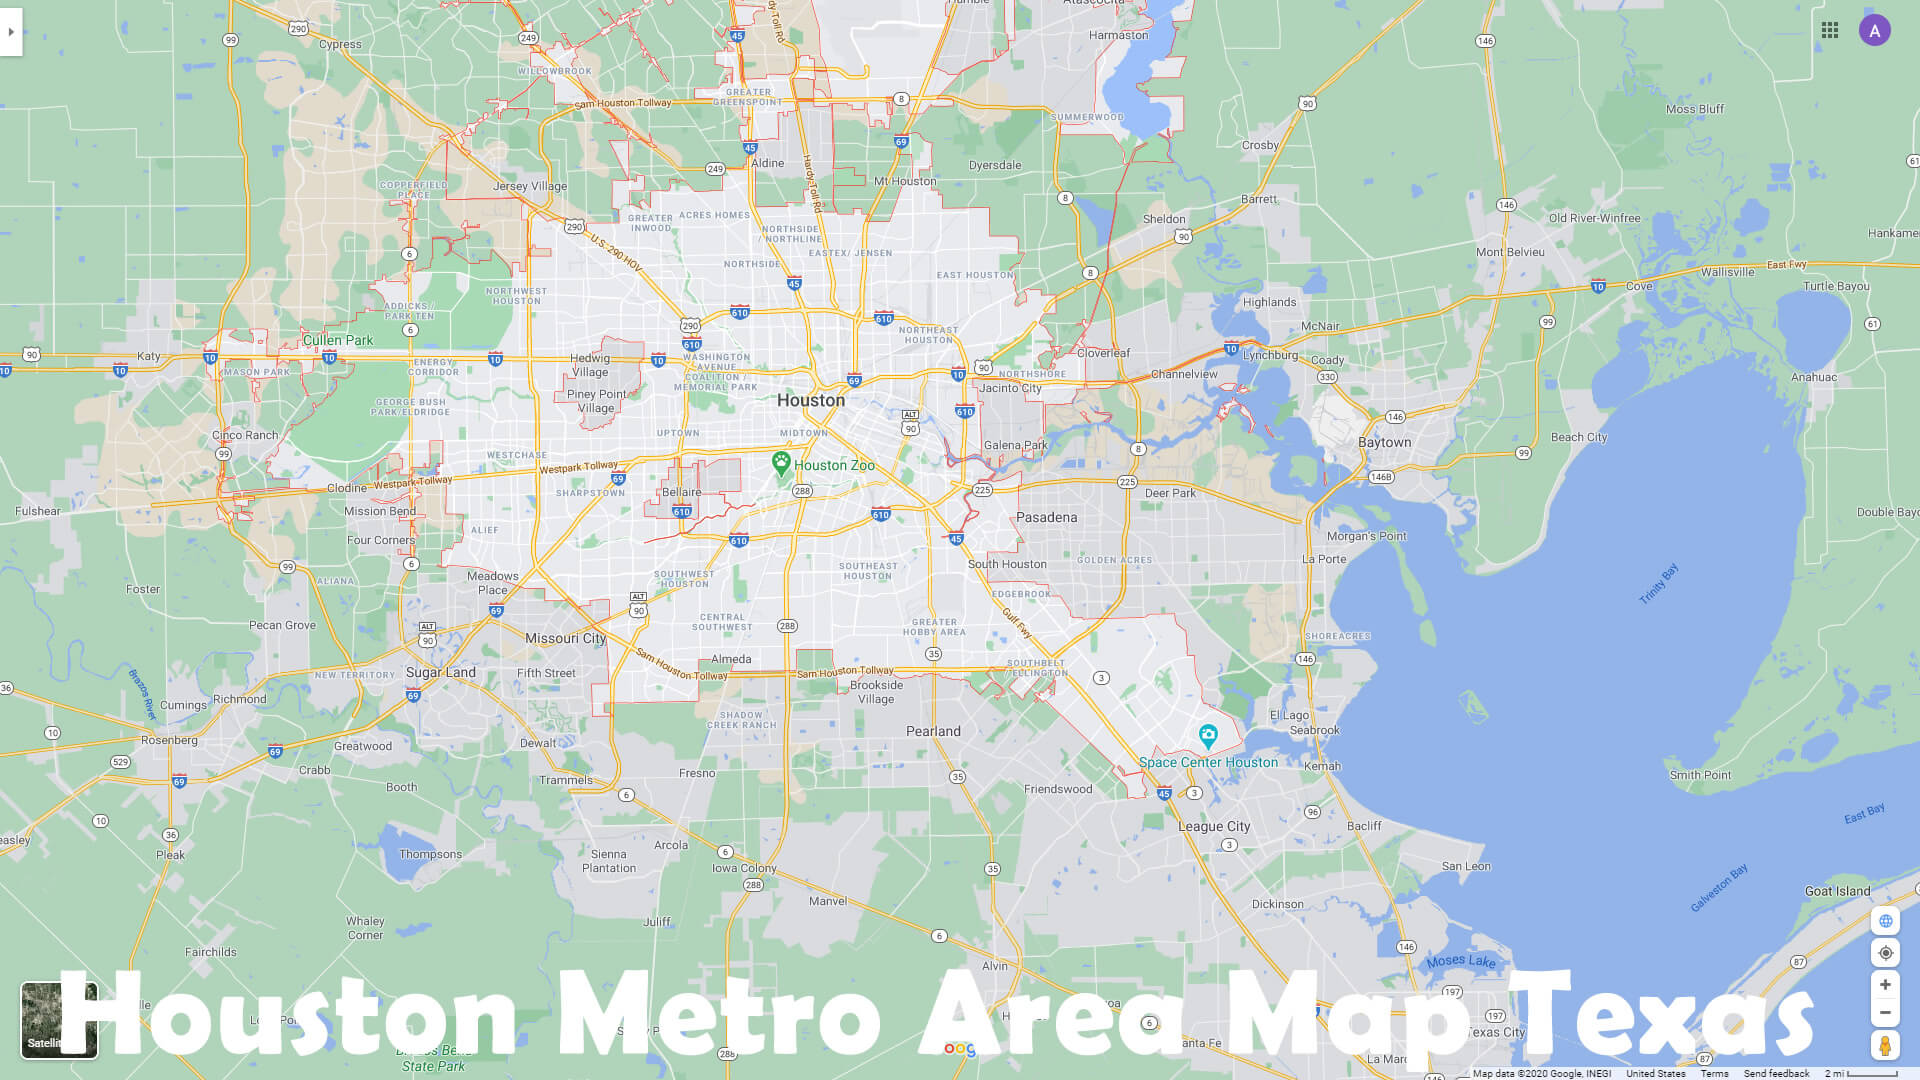 Houston Metro Area Map Texas